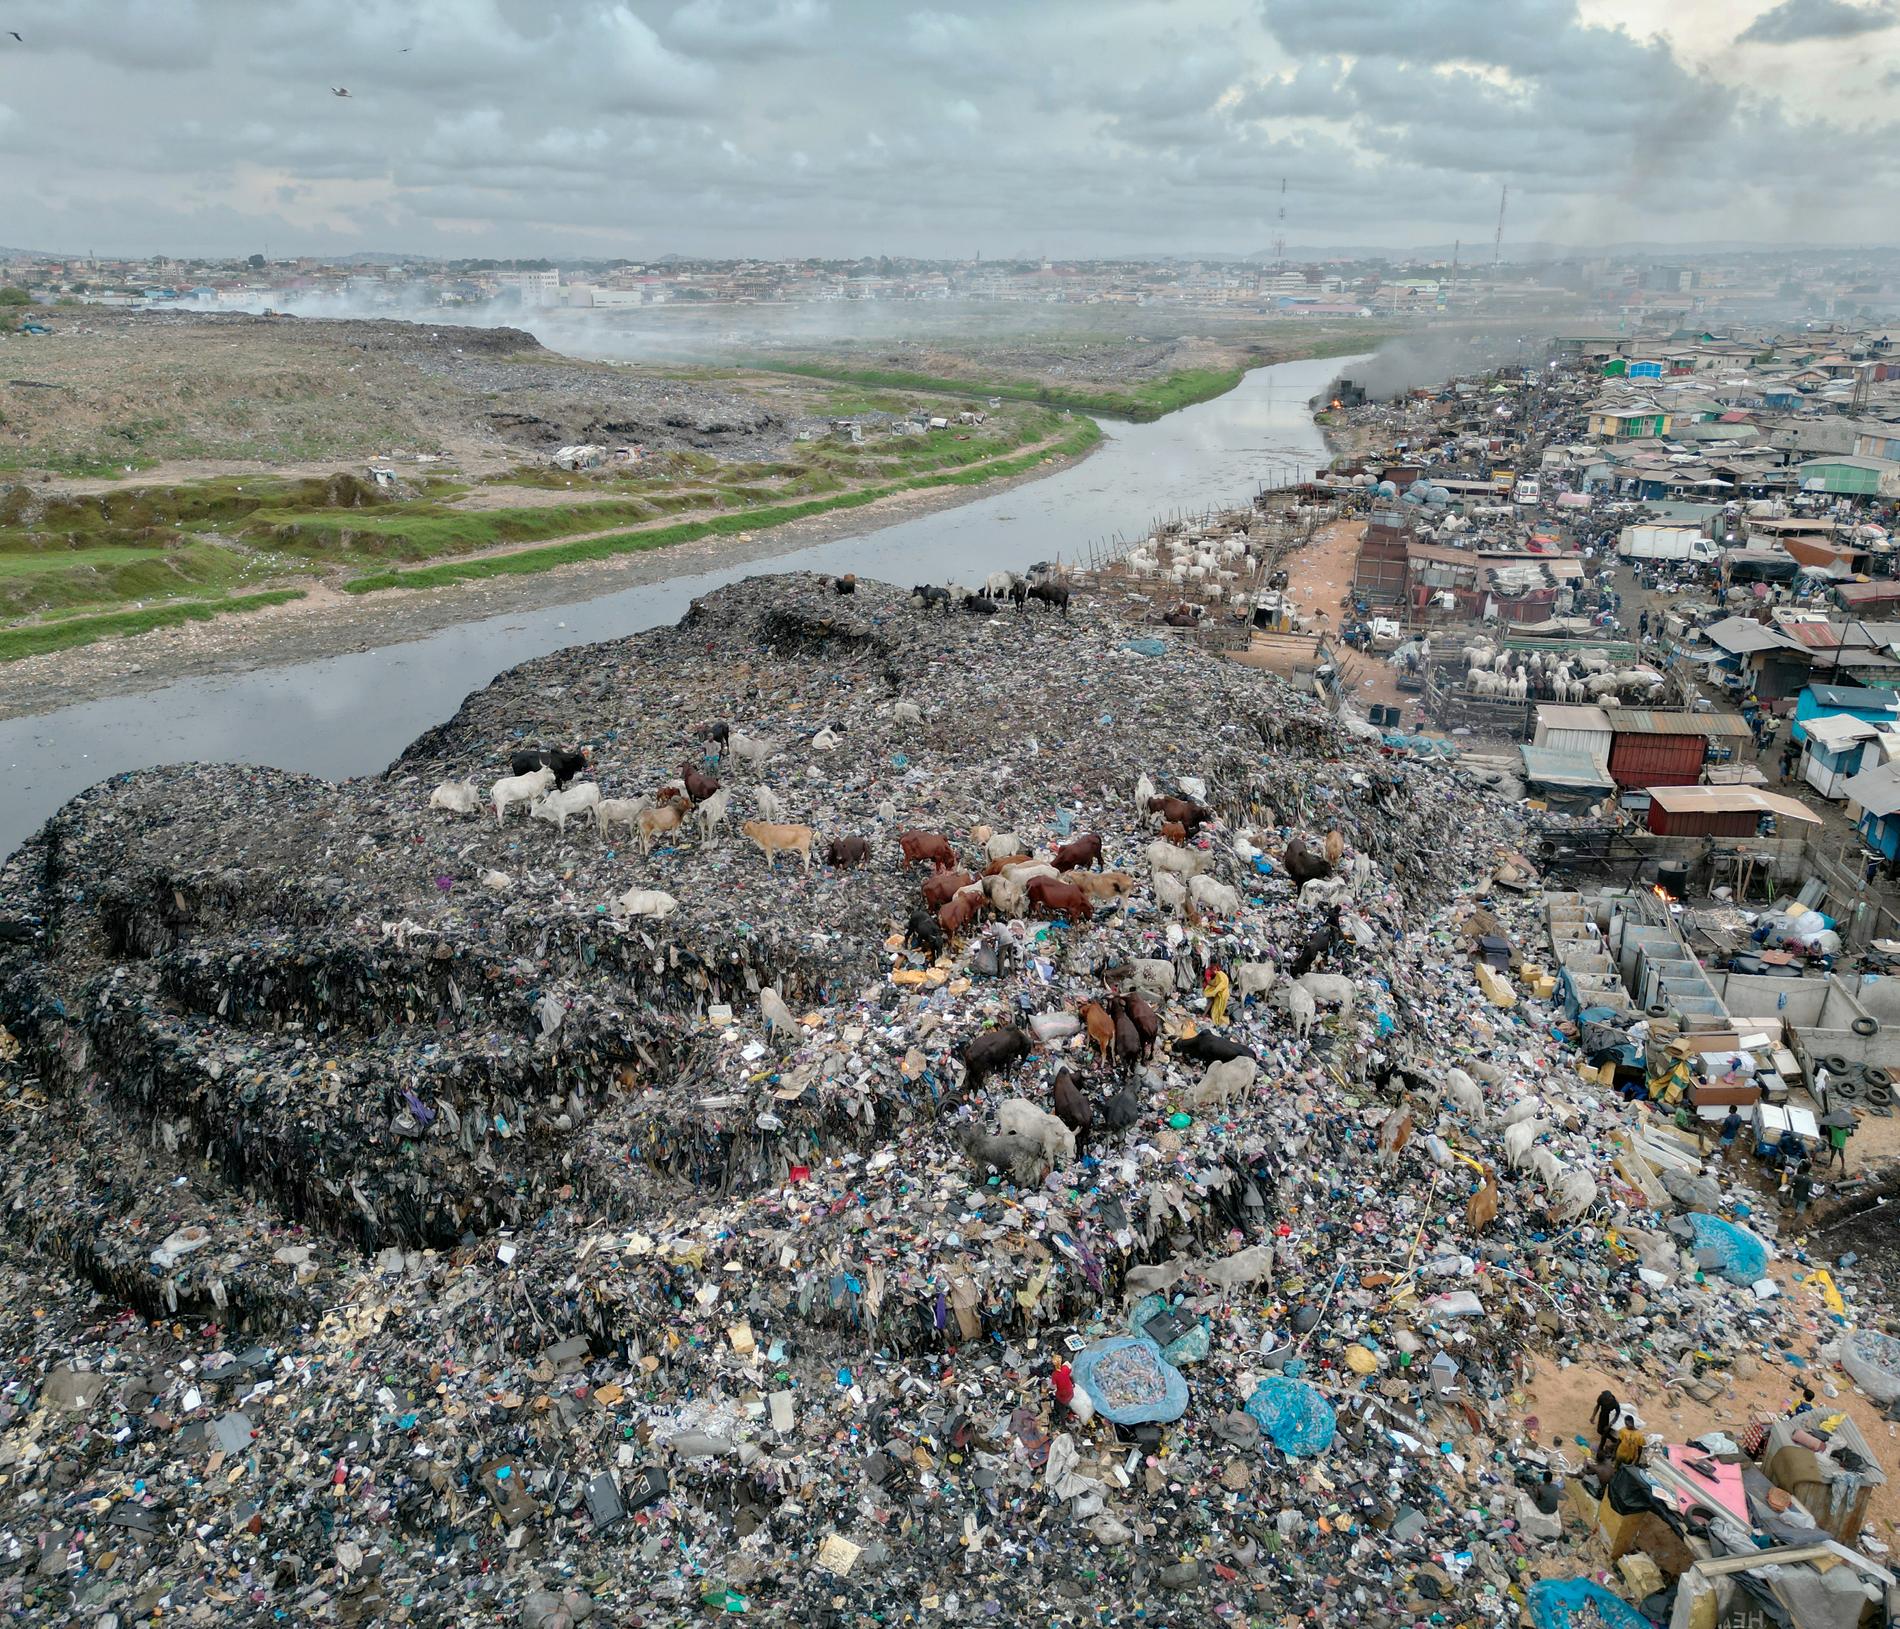 Många av de kläder vi lämnar till återvinning i Sverige hamnar som sopor i fattiga länder och skapar enorma miljöproblem.